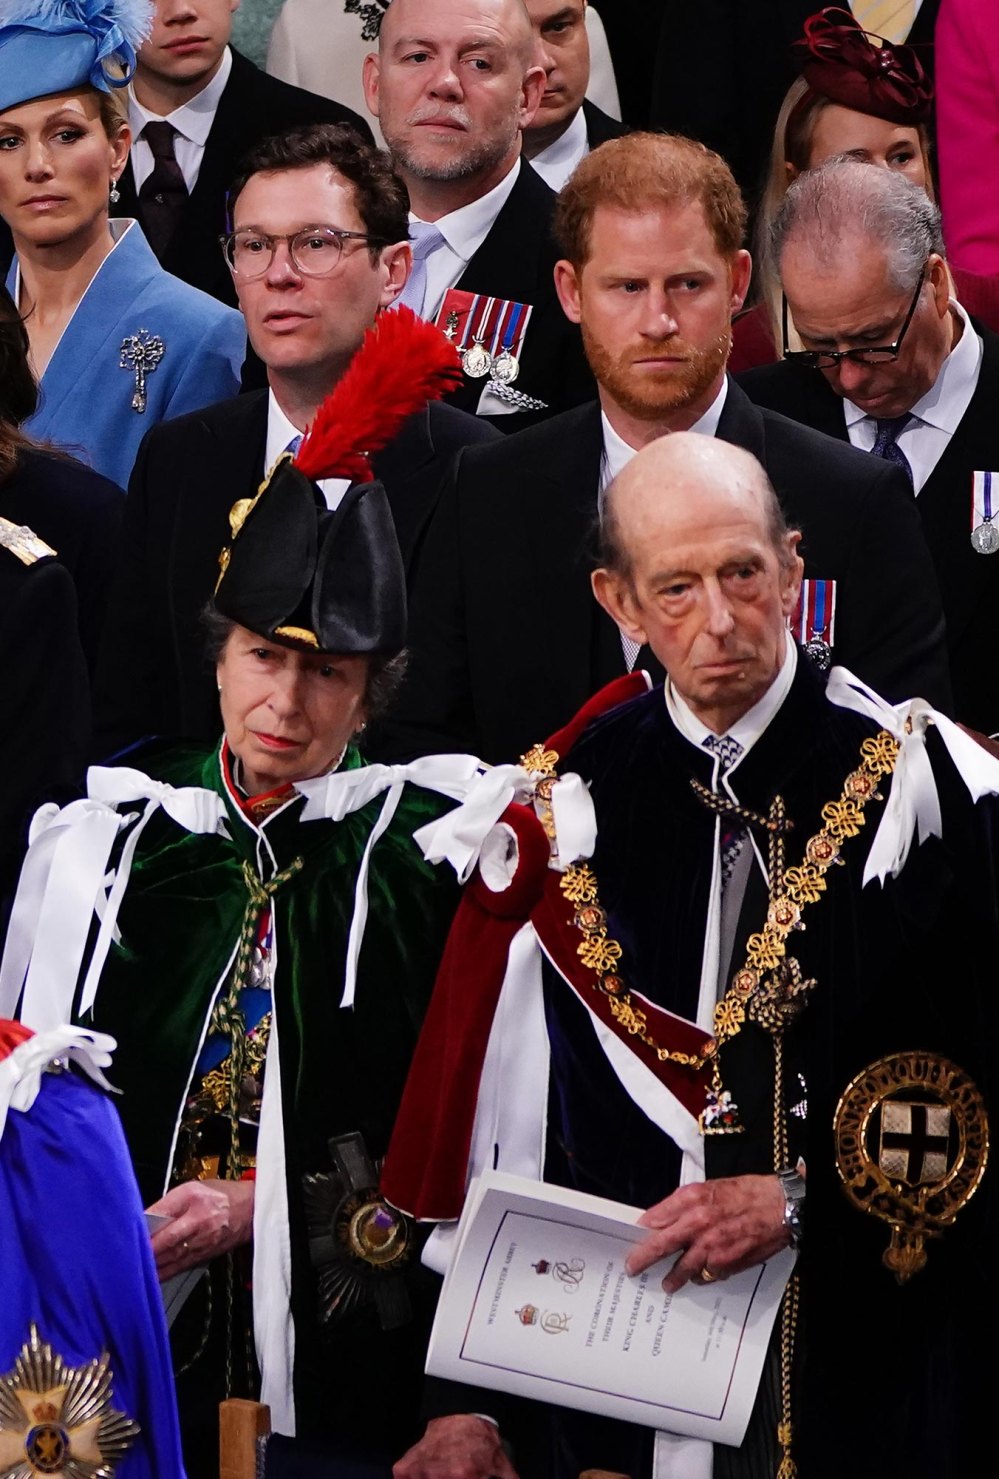 Prinzessin Anne zögerte, den riesigen Hut zu tragen, der Prinz Harrys Sicht bei der Krönung 761 versperrte